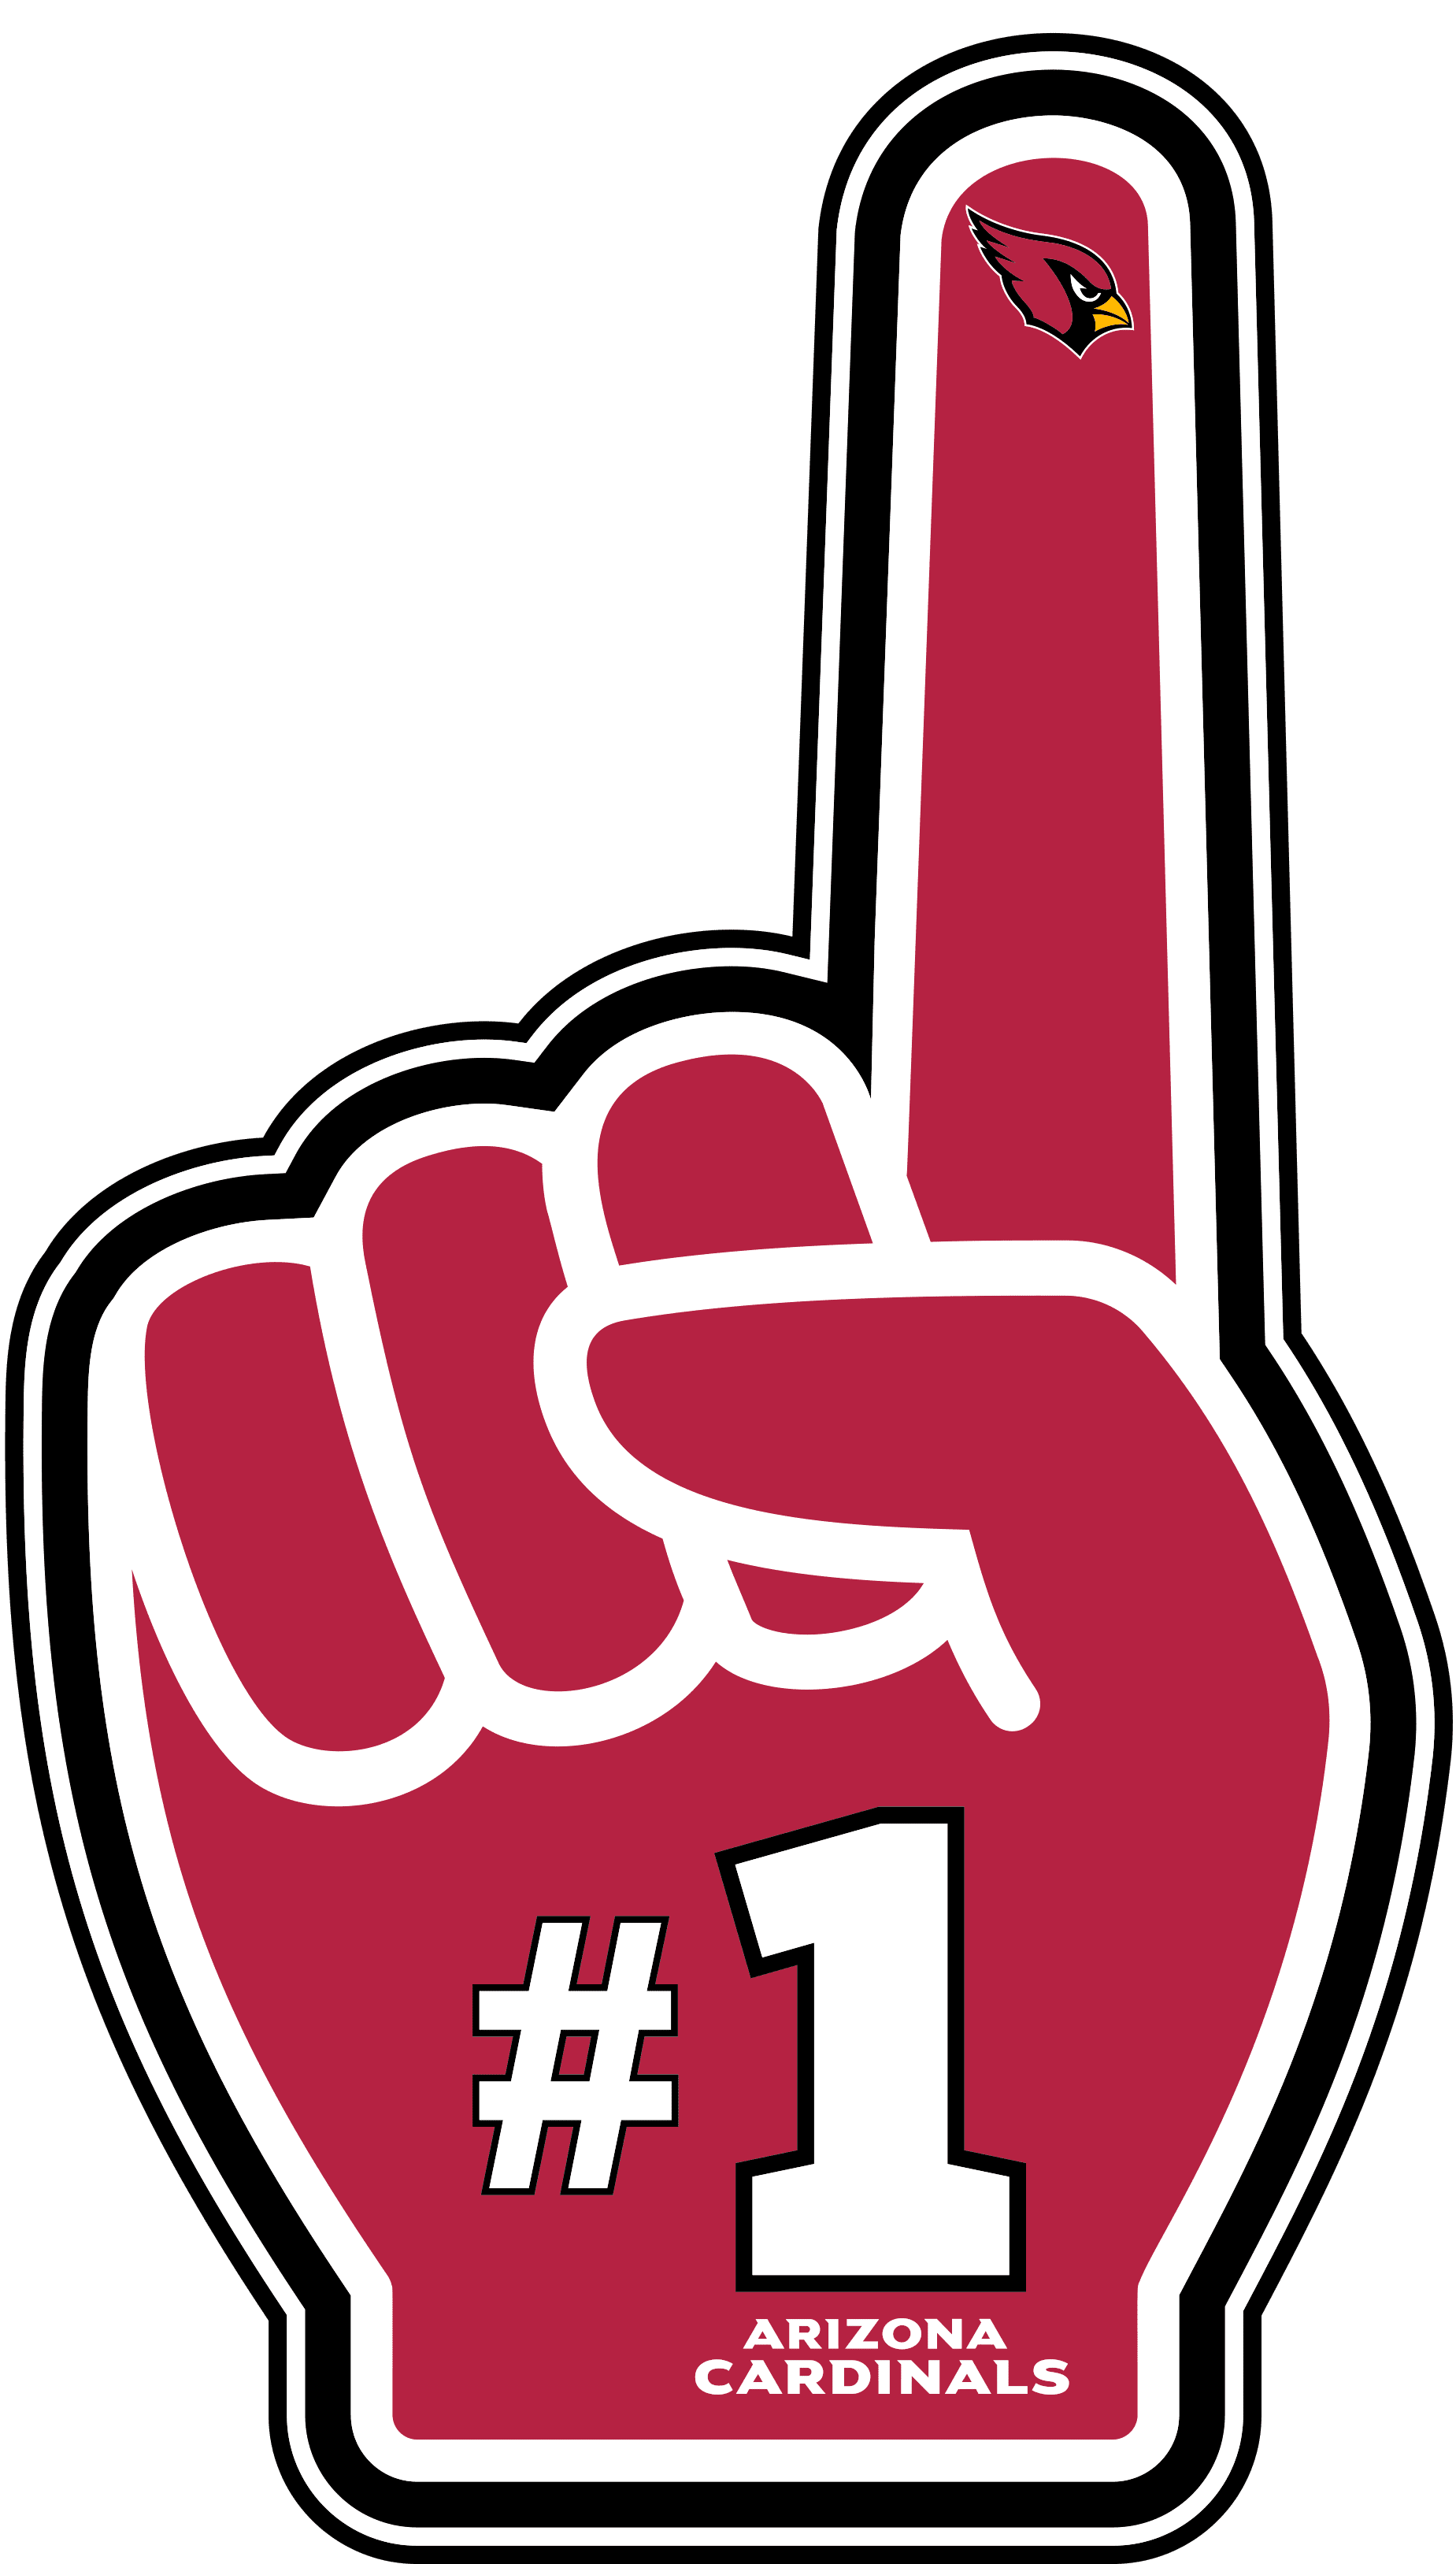 Arizona Cardinals Text Logo SVG, Cardinals Logo Vector